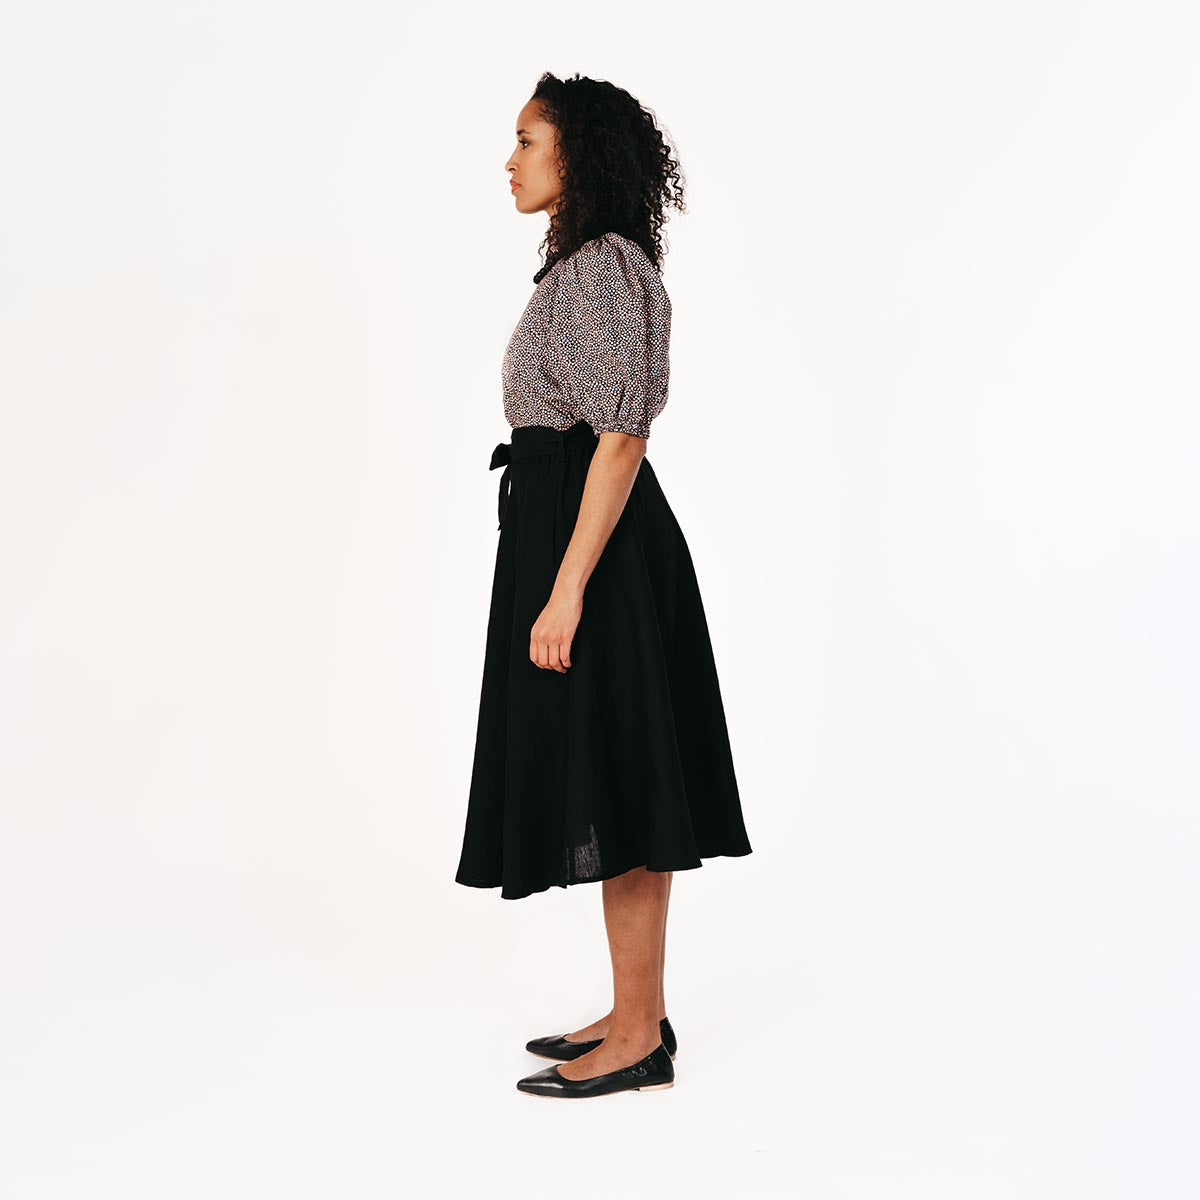 Kaisla skirt, black